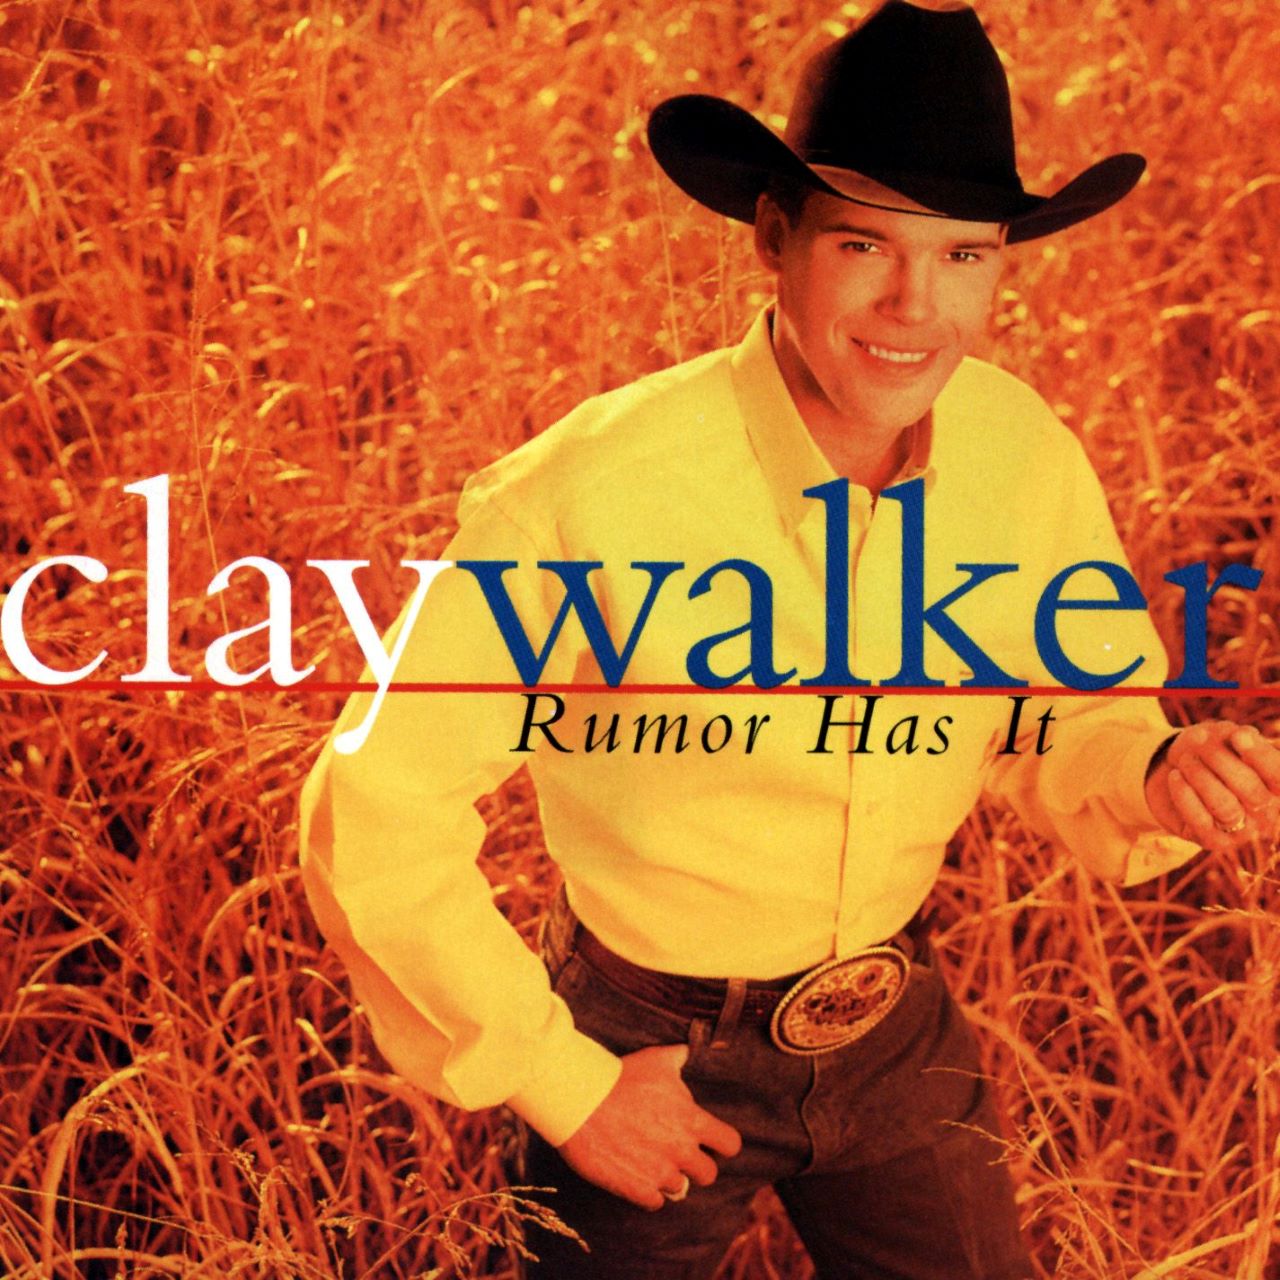 Clay Walker - Rumor Has It cover album